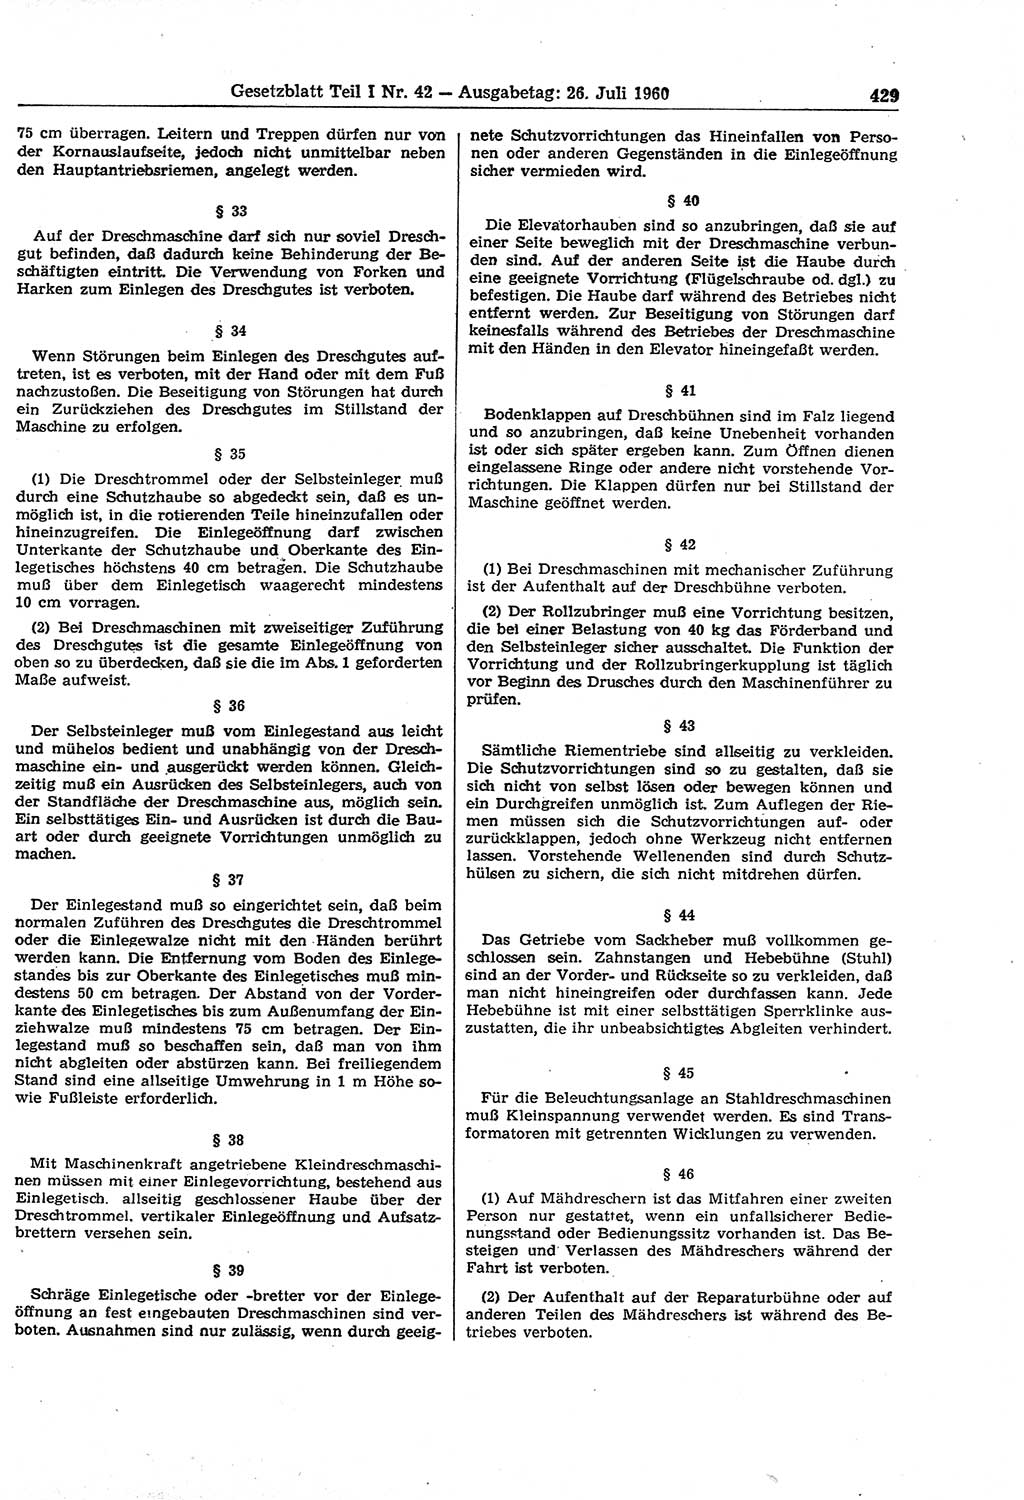 Gesetzblatt (GBl.) der Deutschen Demokratischen Republik (DDR) Teil Ⅰ 1960, Seite 429 (GBl. DDR Ⅰ 1960, S. 429)